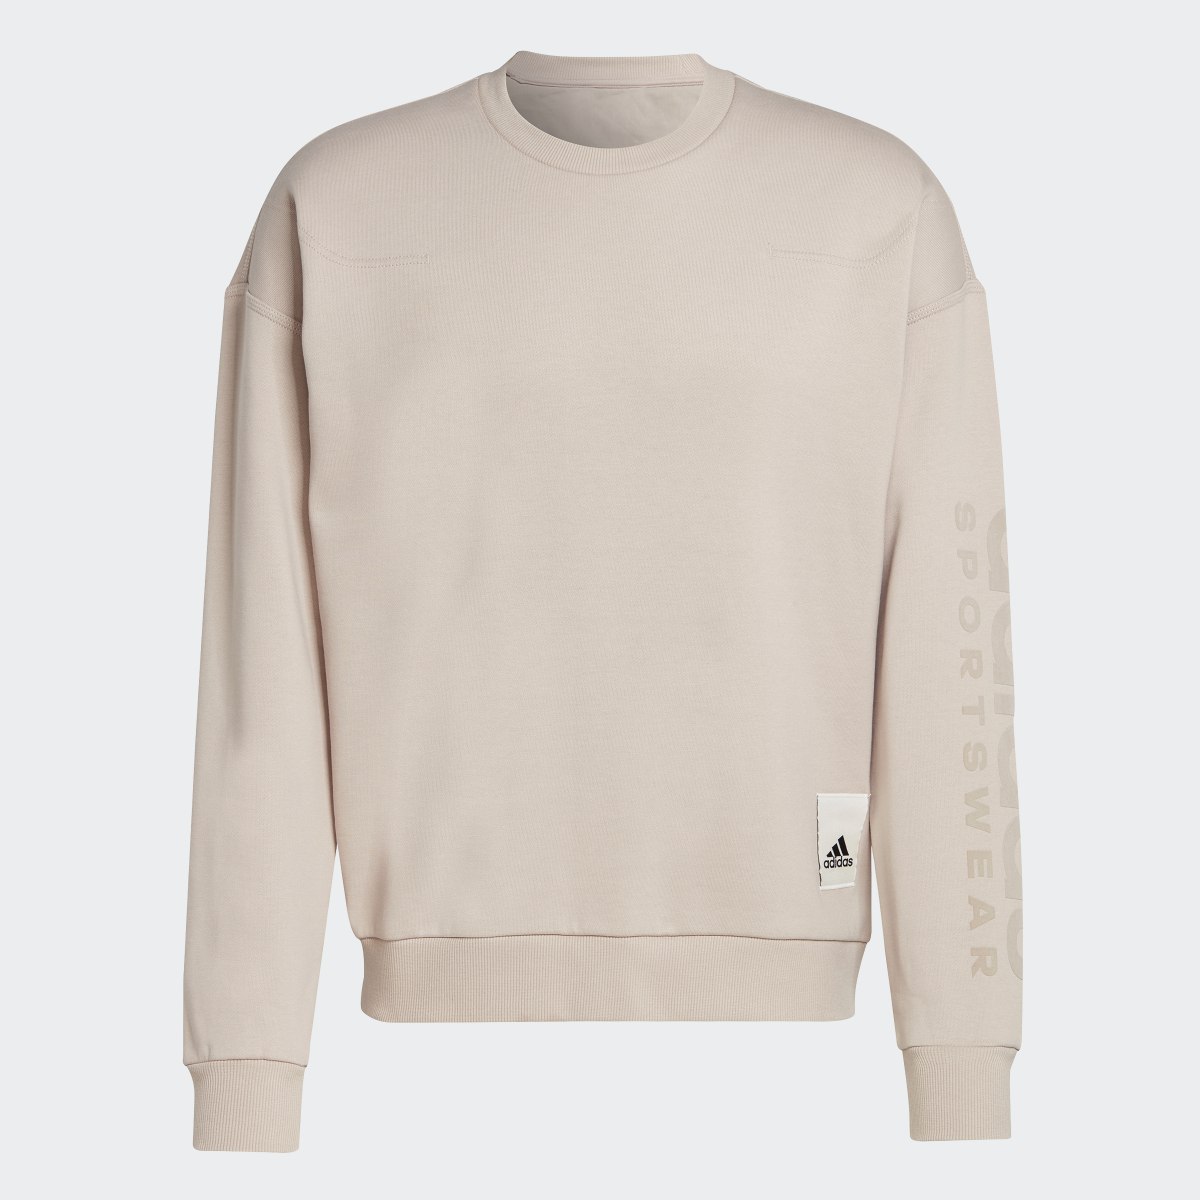 Adidas Lounge Fleece Sweatshirt. 5